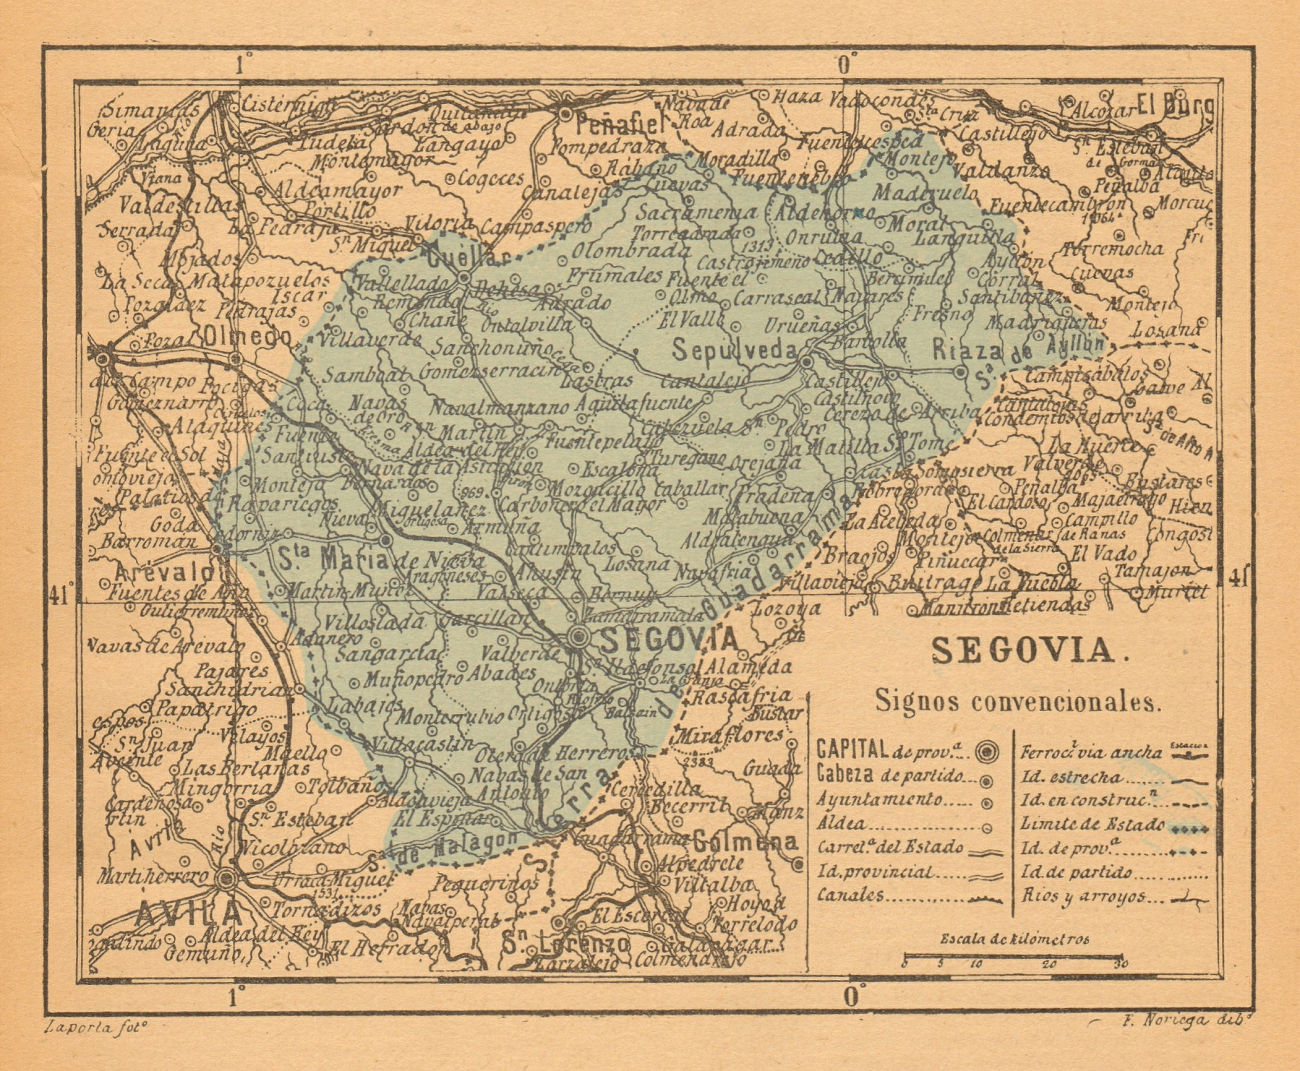 Associate Product SEGOVIA. Castilla y León. Mapa antiguo de la provincia 1914 old antique